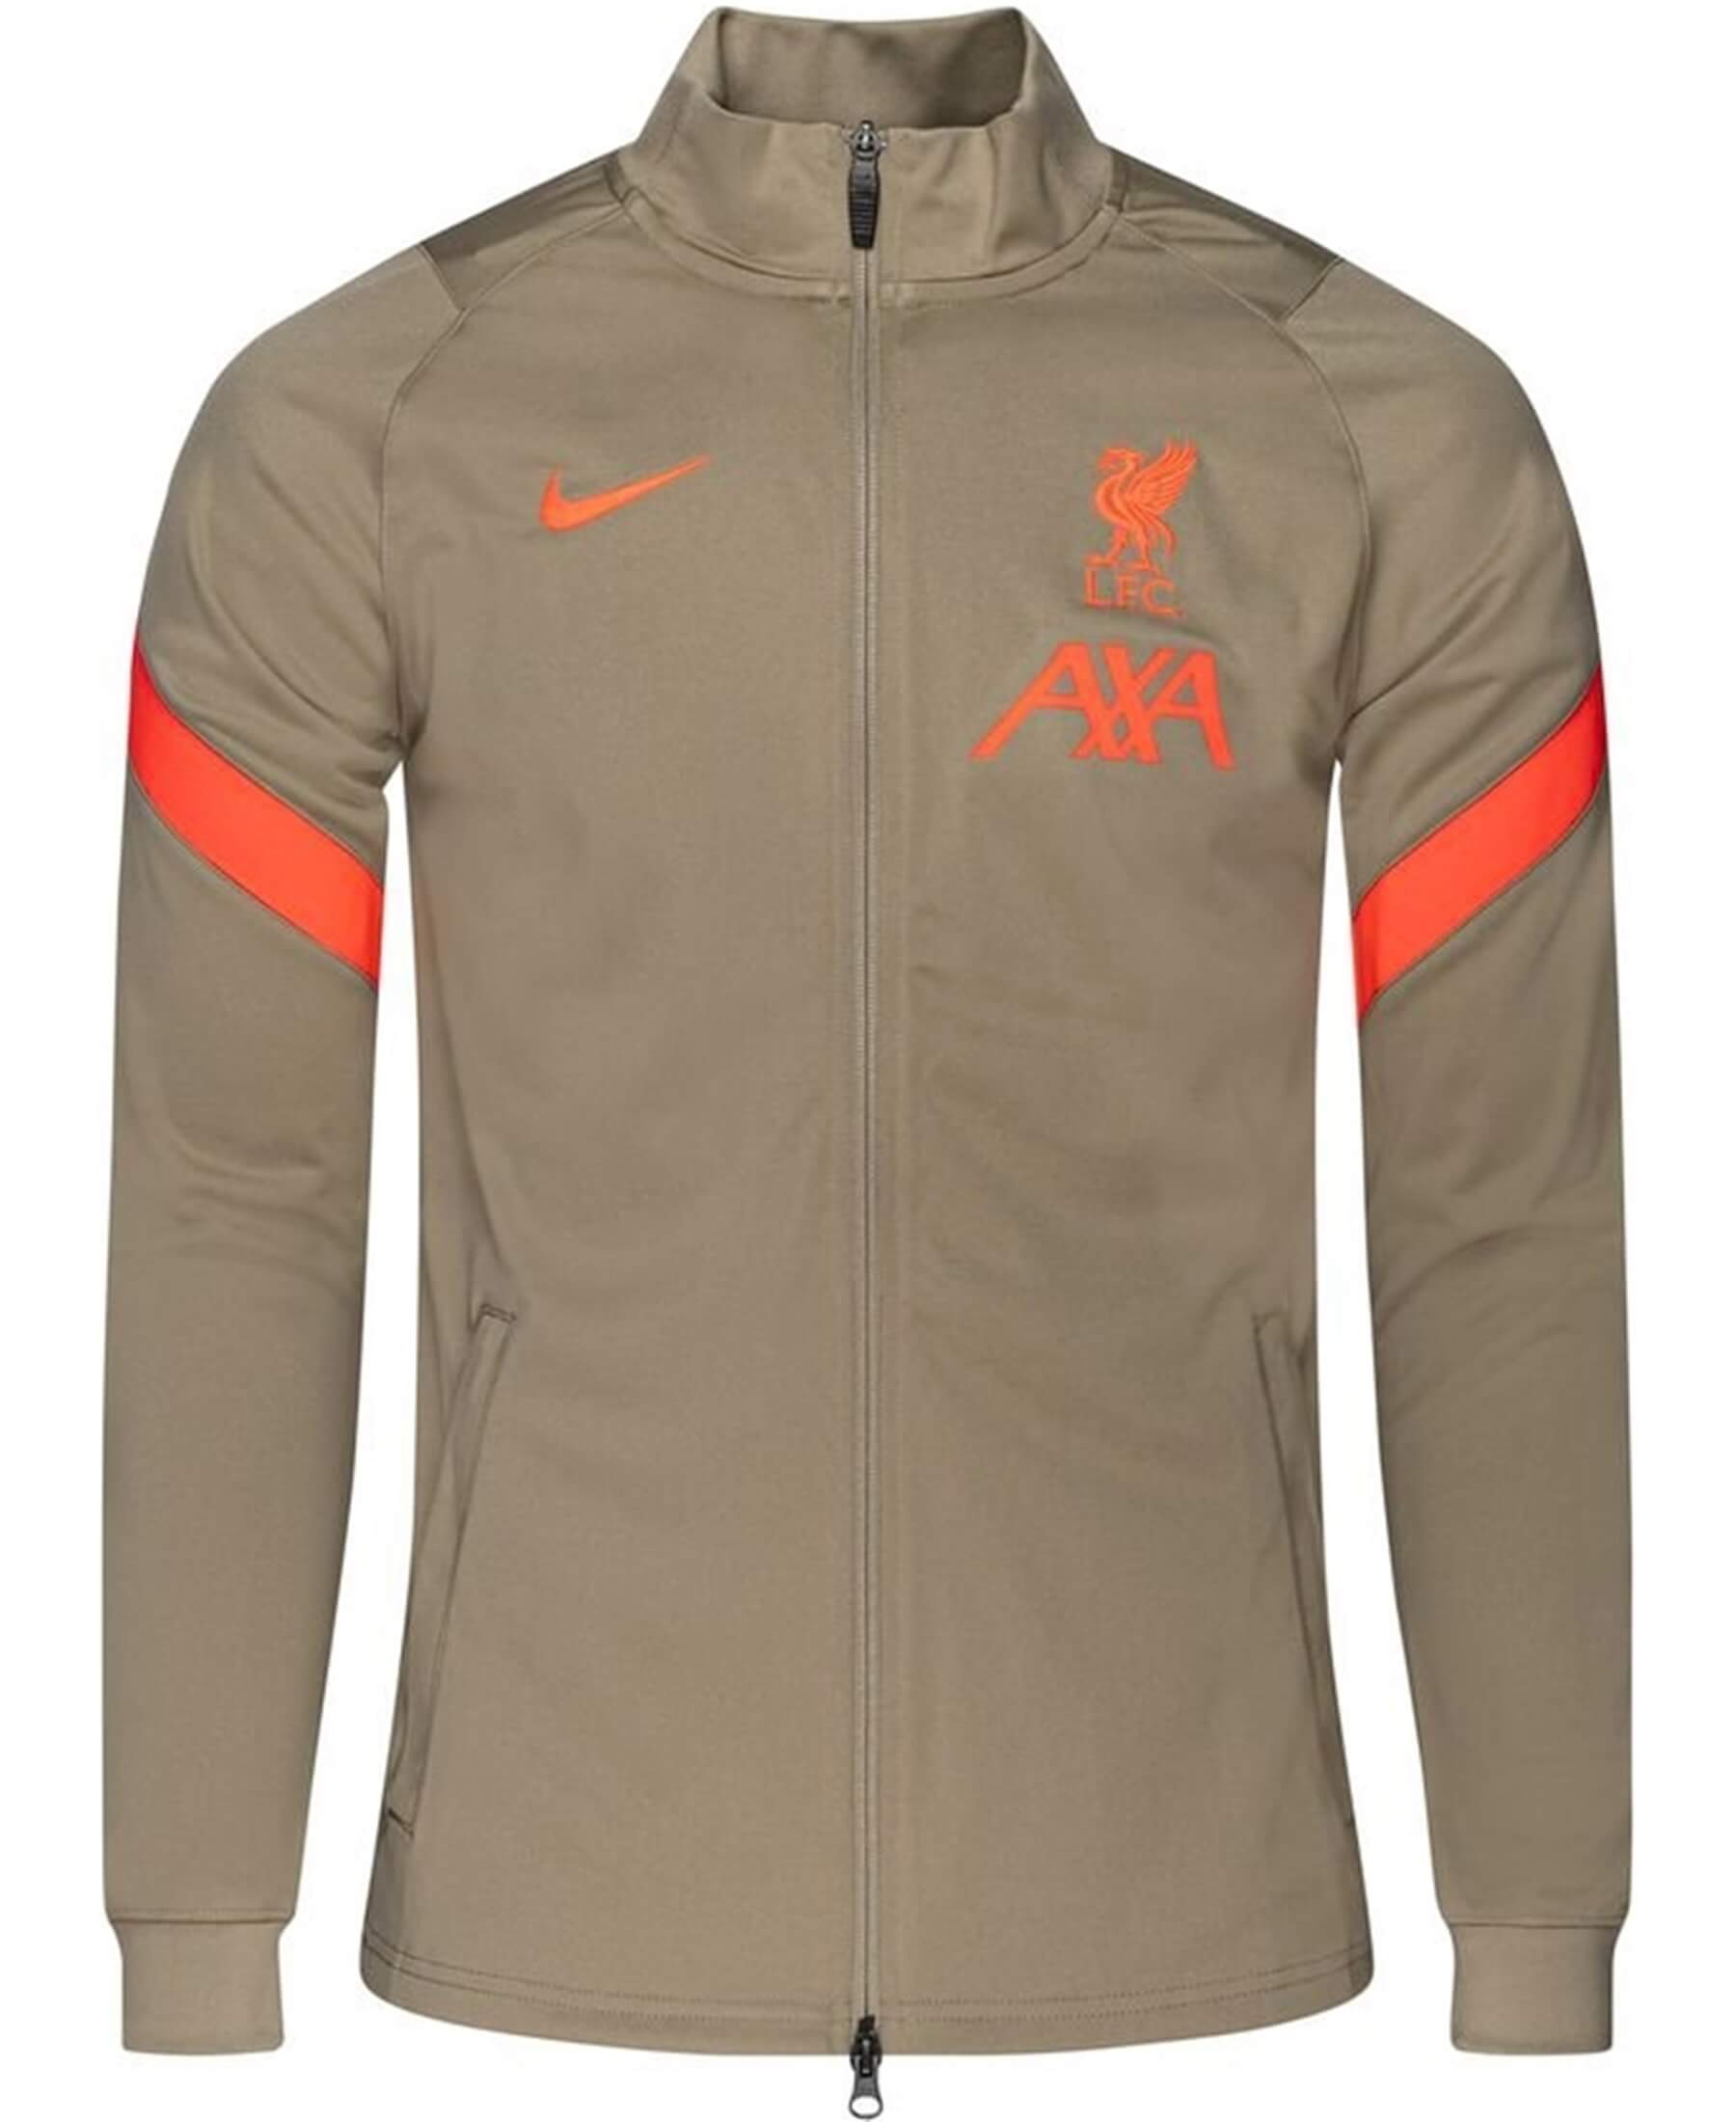 Nike FC Liverpool (LFC) Dry Strike Track Trainingsjacke 2021/2022 [DB0273-392] - Offizielle Jacke für die Saison. Bestellen Sie im SHOP4TEAMSPORT Onlineshop. Perfekt für Liverpool-Fans! Sichern Sie sich diese exklusive Trainingsjacke und zeigen Sie Ihre Unterstützung für den FC Liverpool.